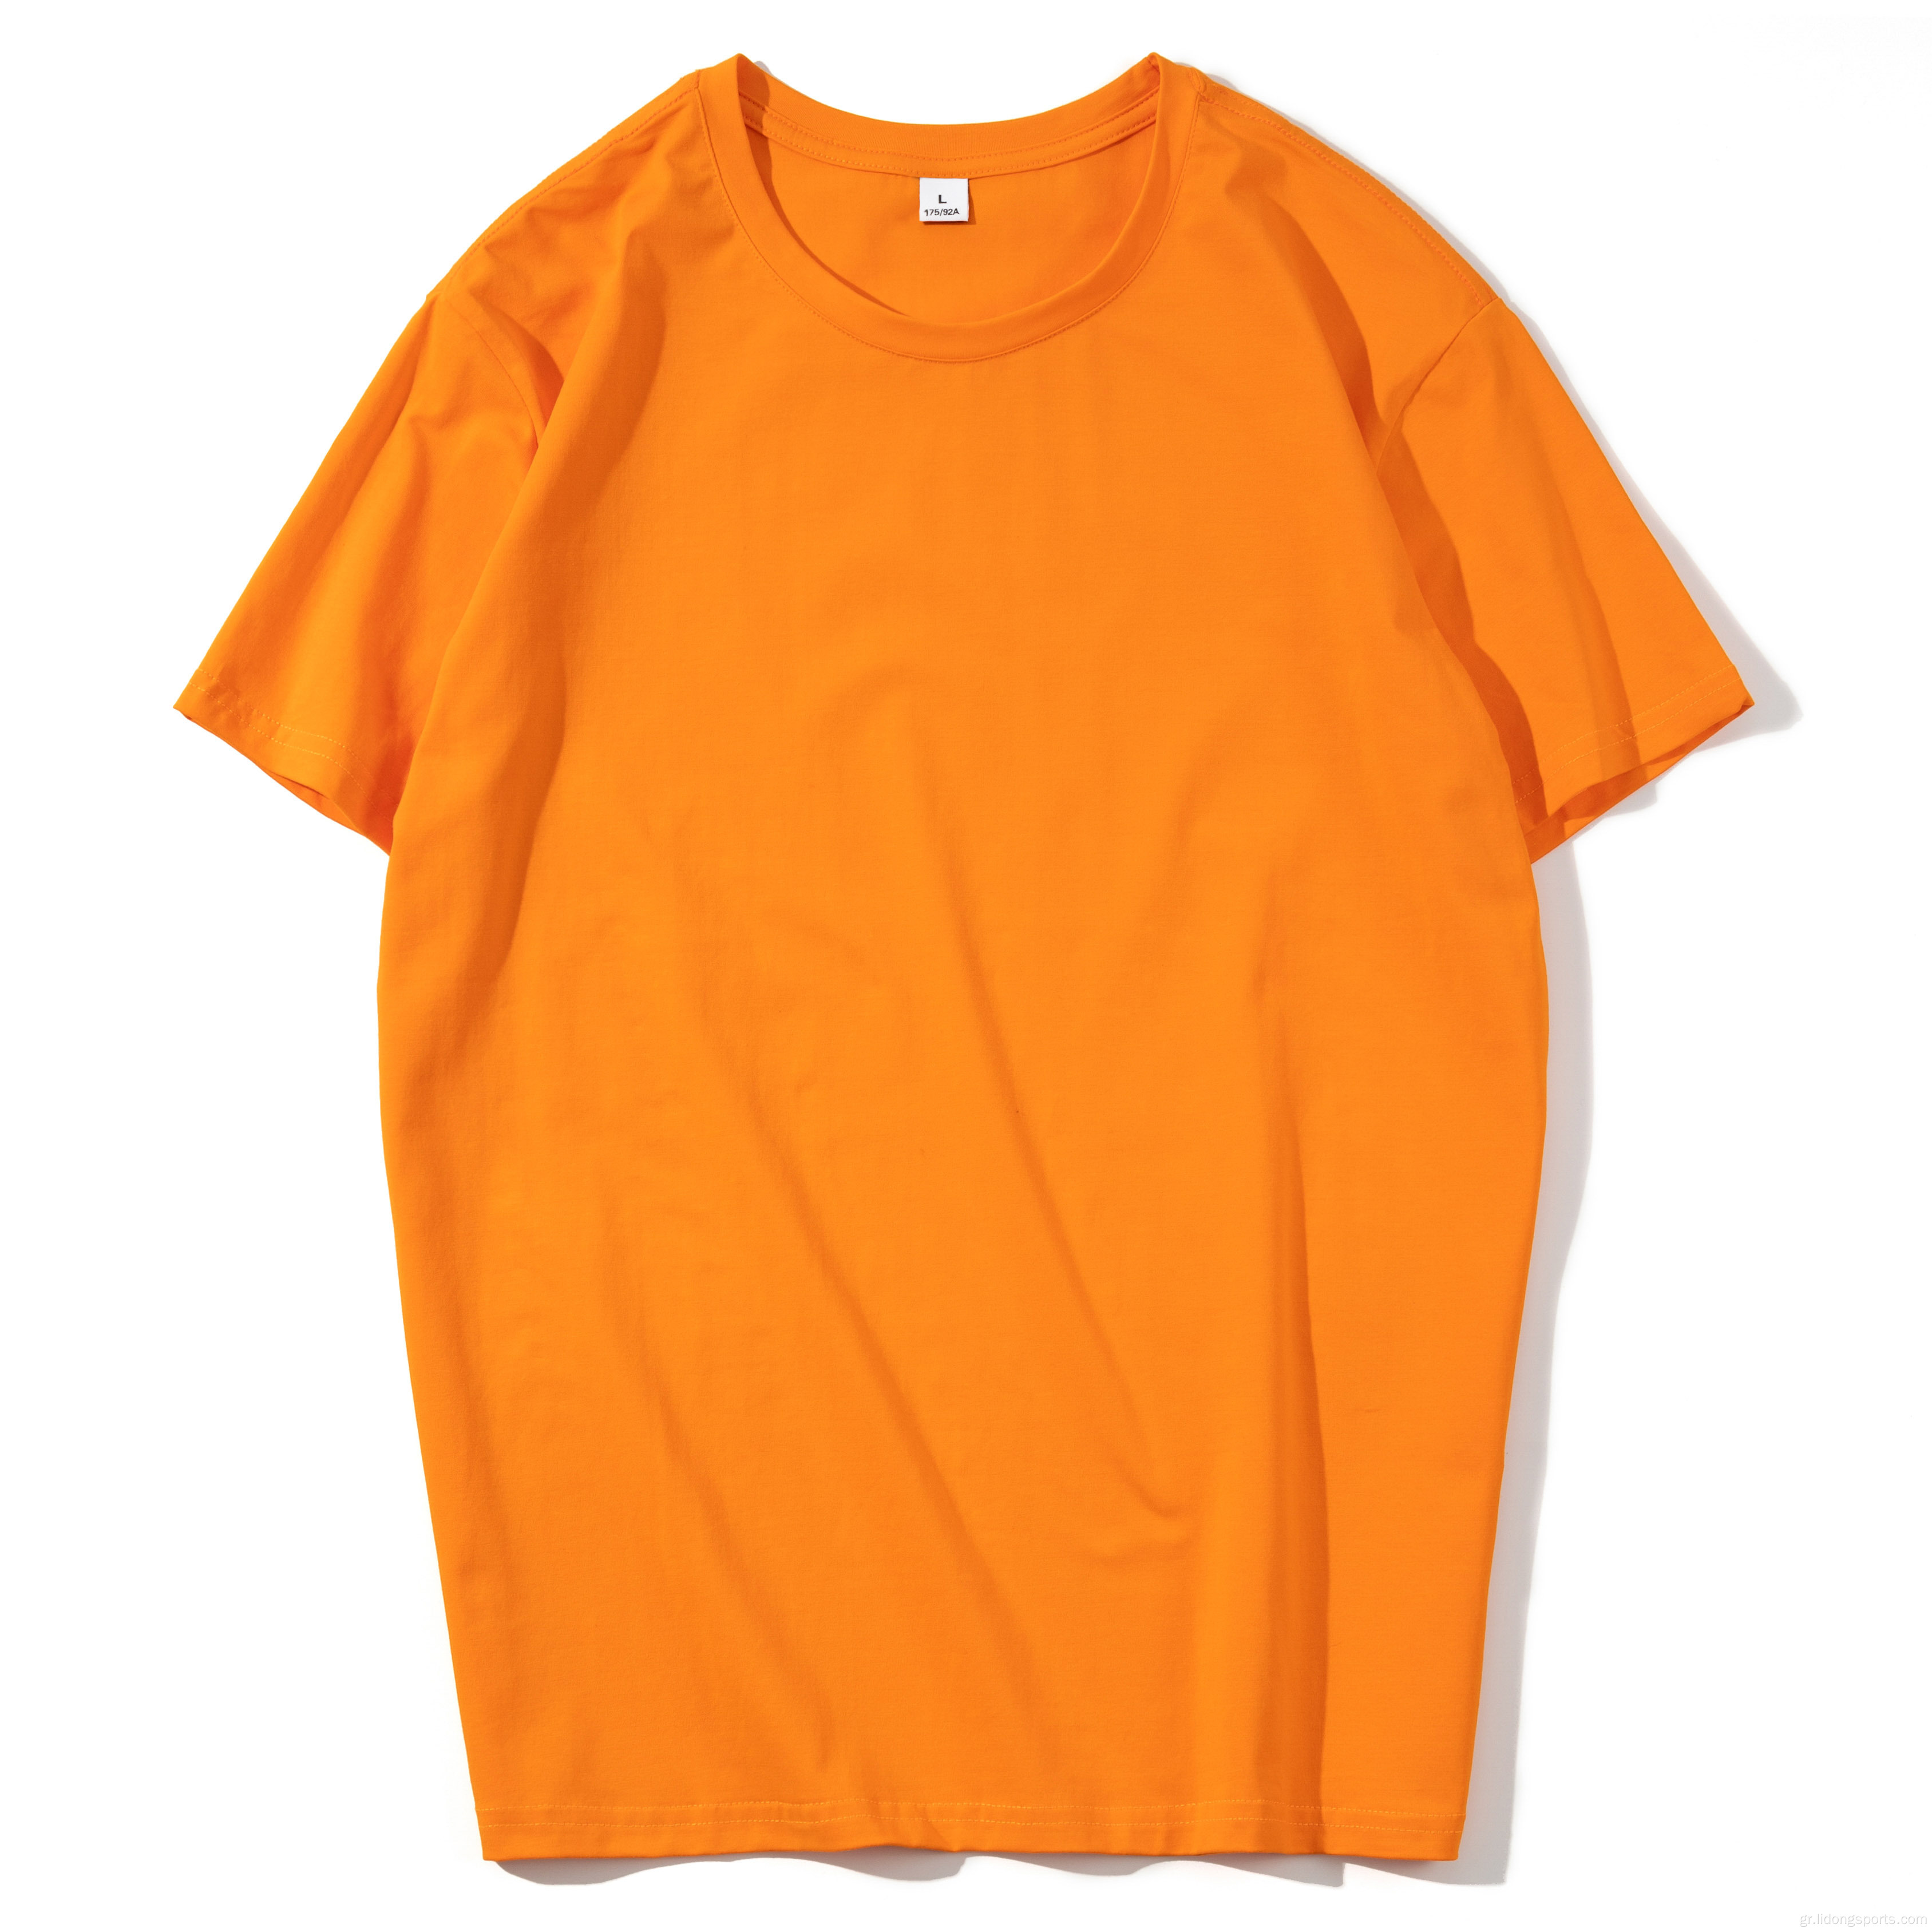 Χονδρικό πολύχρωμο casual χαλαρό μπλουζάκι άνετο ύφασμα κοντό μανίκι συν το μέγεθος t-shirts